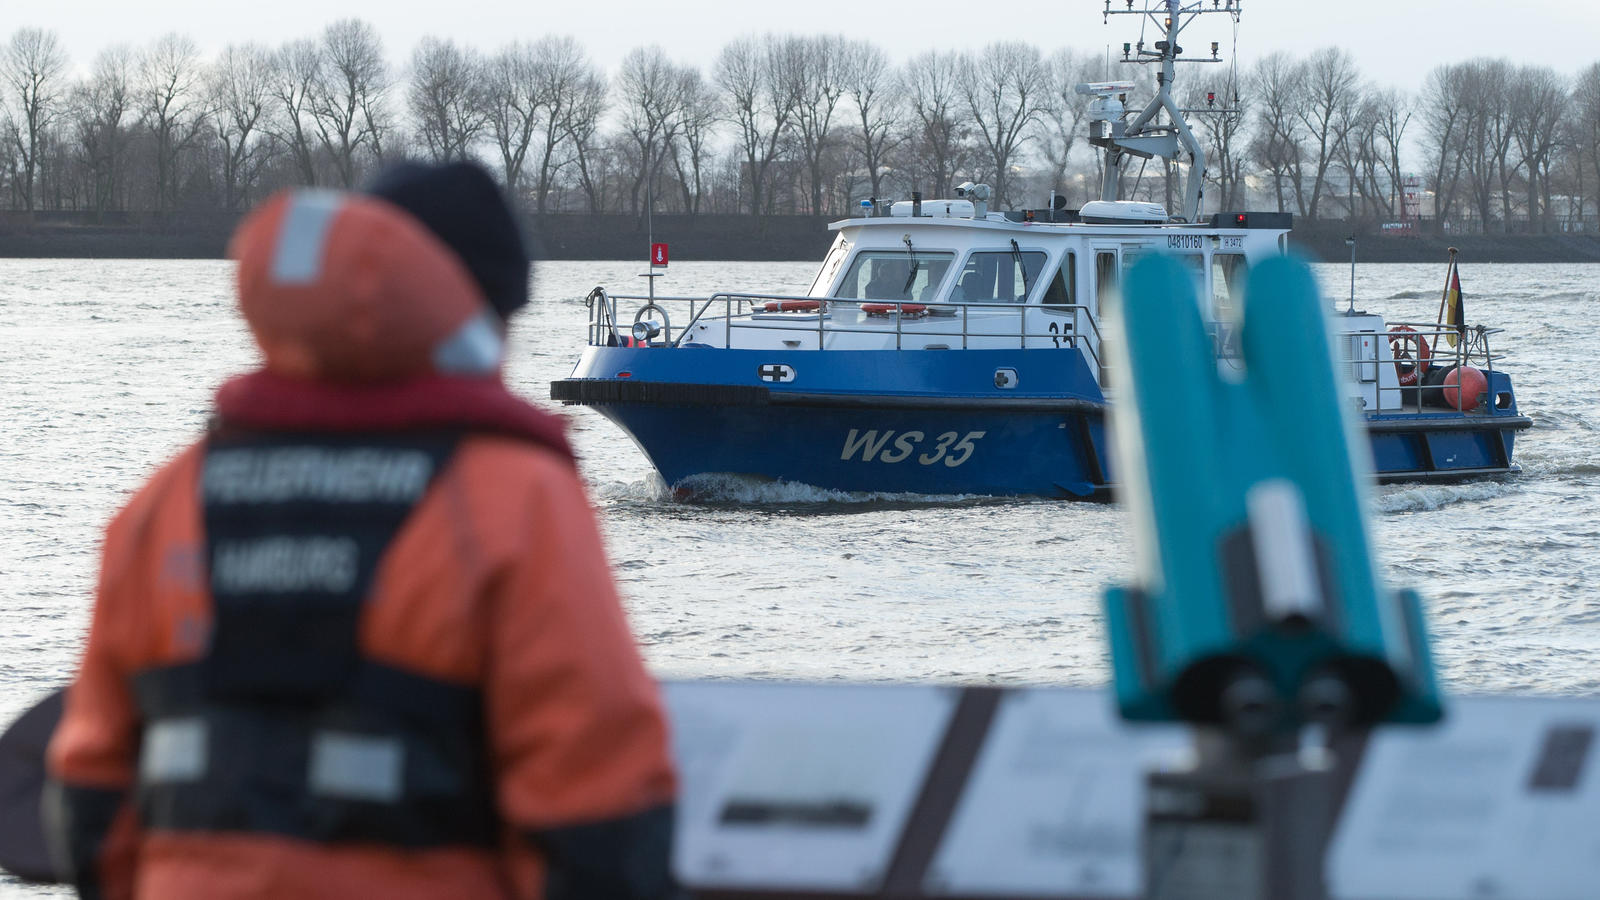 Die Besatzung eines Polizeibootes sucht am 14.01.2017 in Hamburg die Elbe nach einer Wasserleiche ab. Polizei und Feuerwehr haben am Nachmittag in der Nähe des Museumshafens Övelgönne nach einer Wasserleiche gesucht, nach rund drei Stunden wurde die 